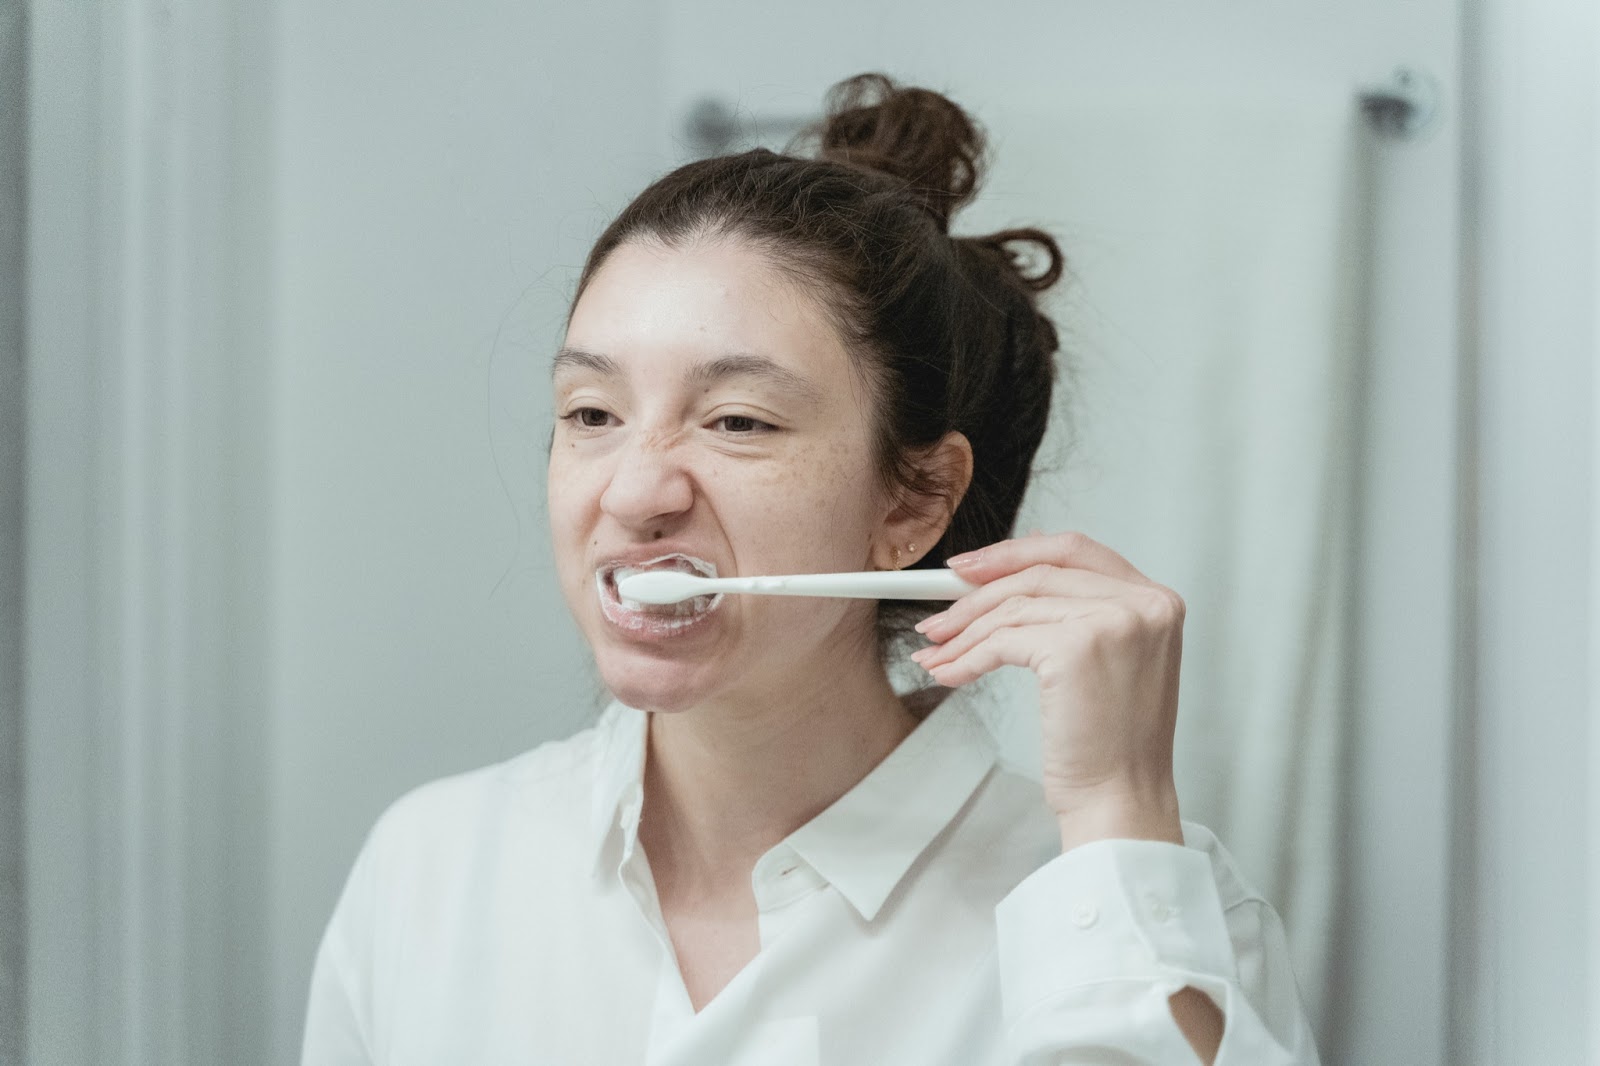 adult woman brushing teeth in mirror, toothbrush, hygiene, oral health